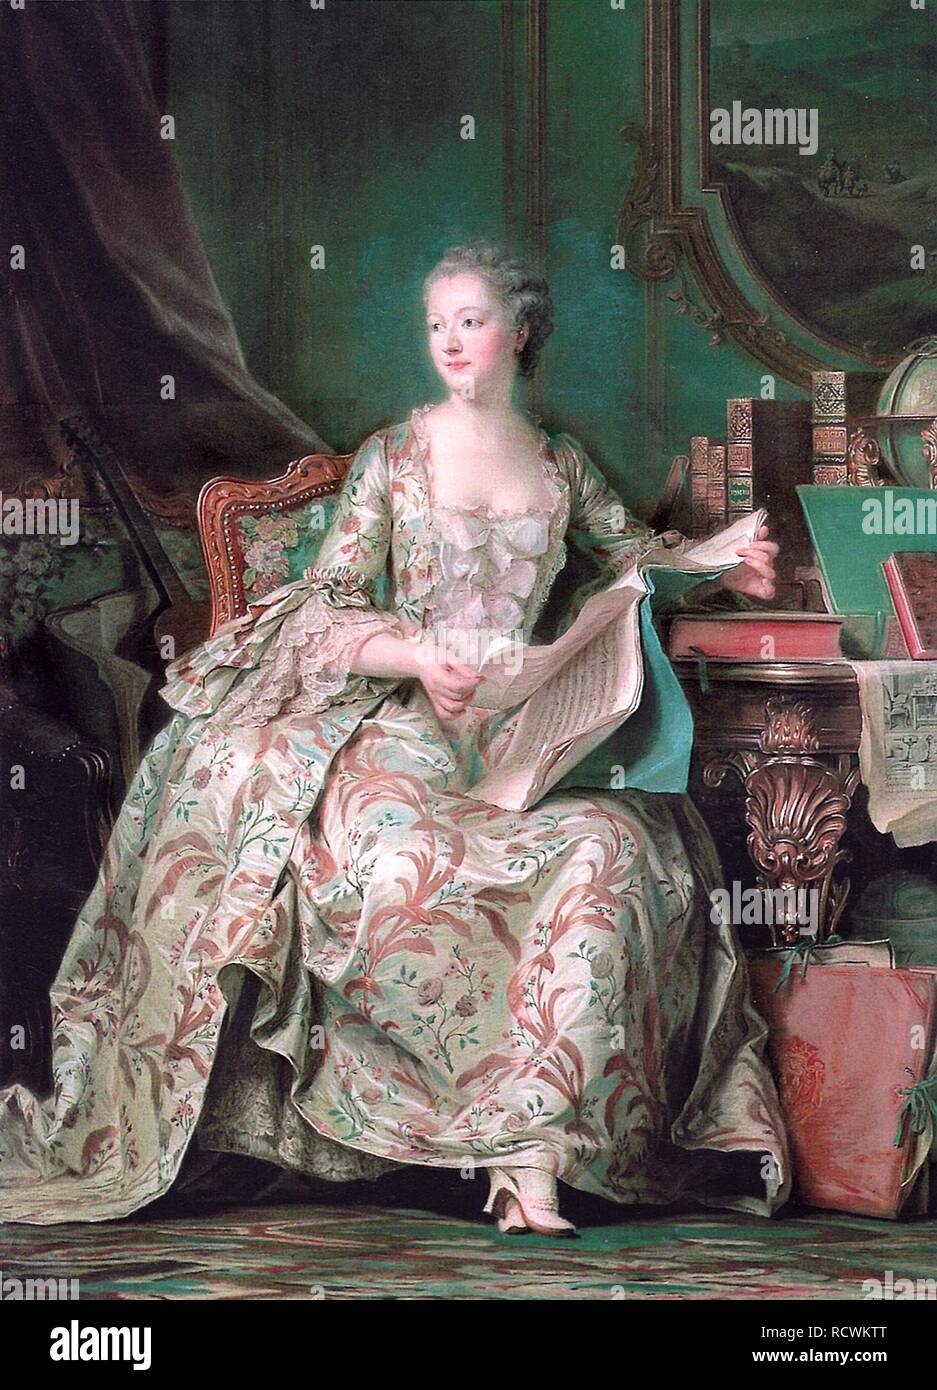 Full-length portrait of the Marquise de Pompadour (1721-1764). Museum: Musée de l'Histoire de France, Château de Versailles. Author: LA TOUR, MAURICE QUENTIN DE. Stock Photo